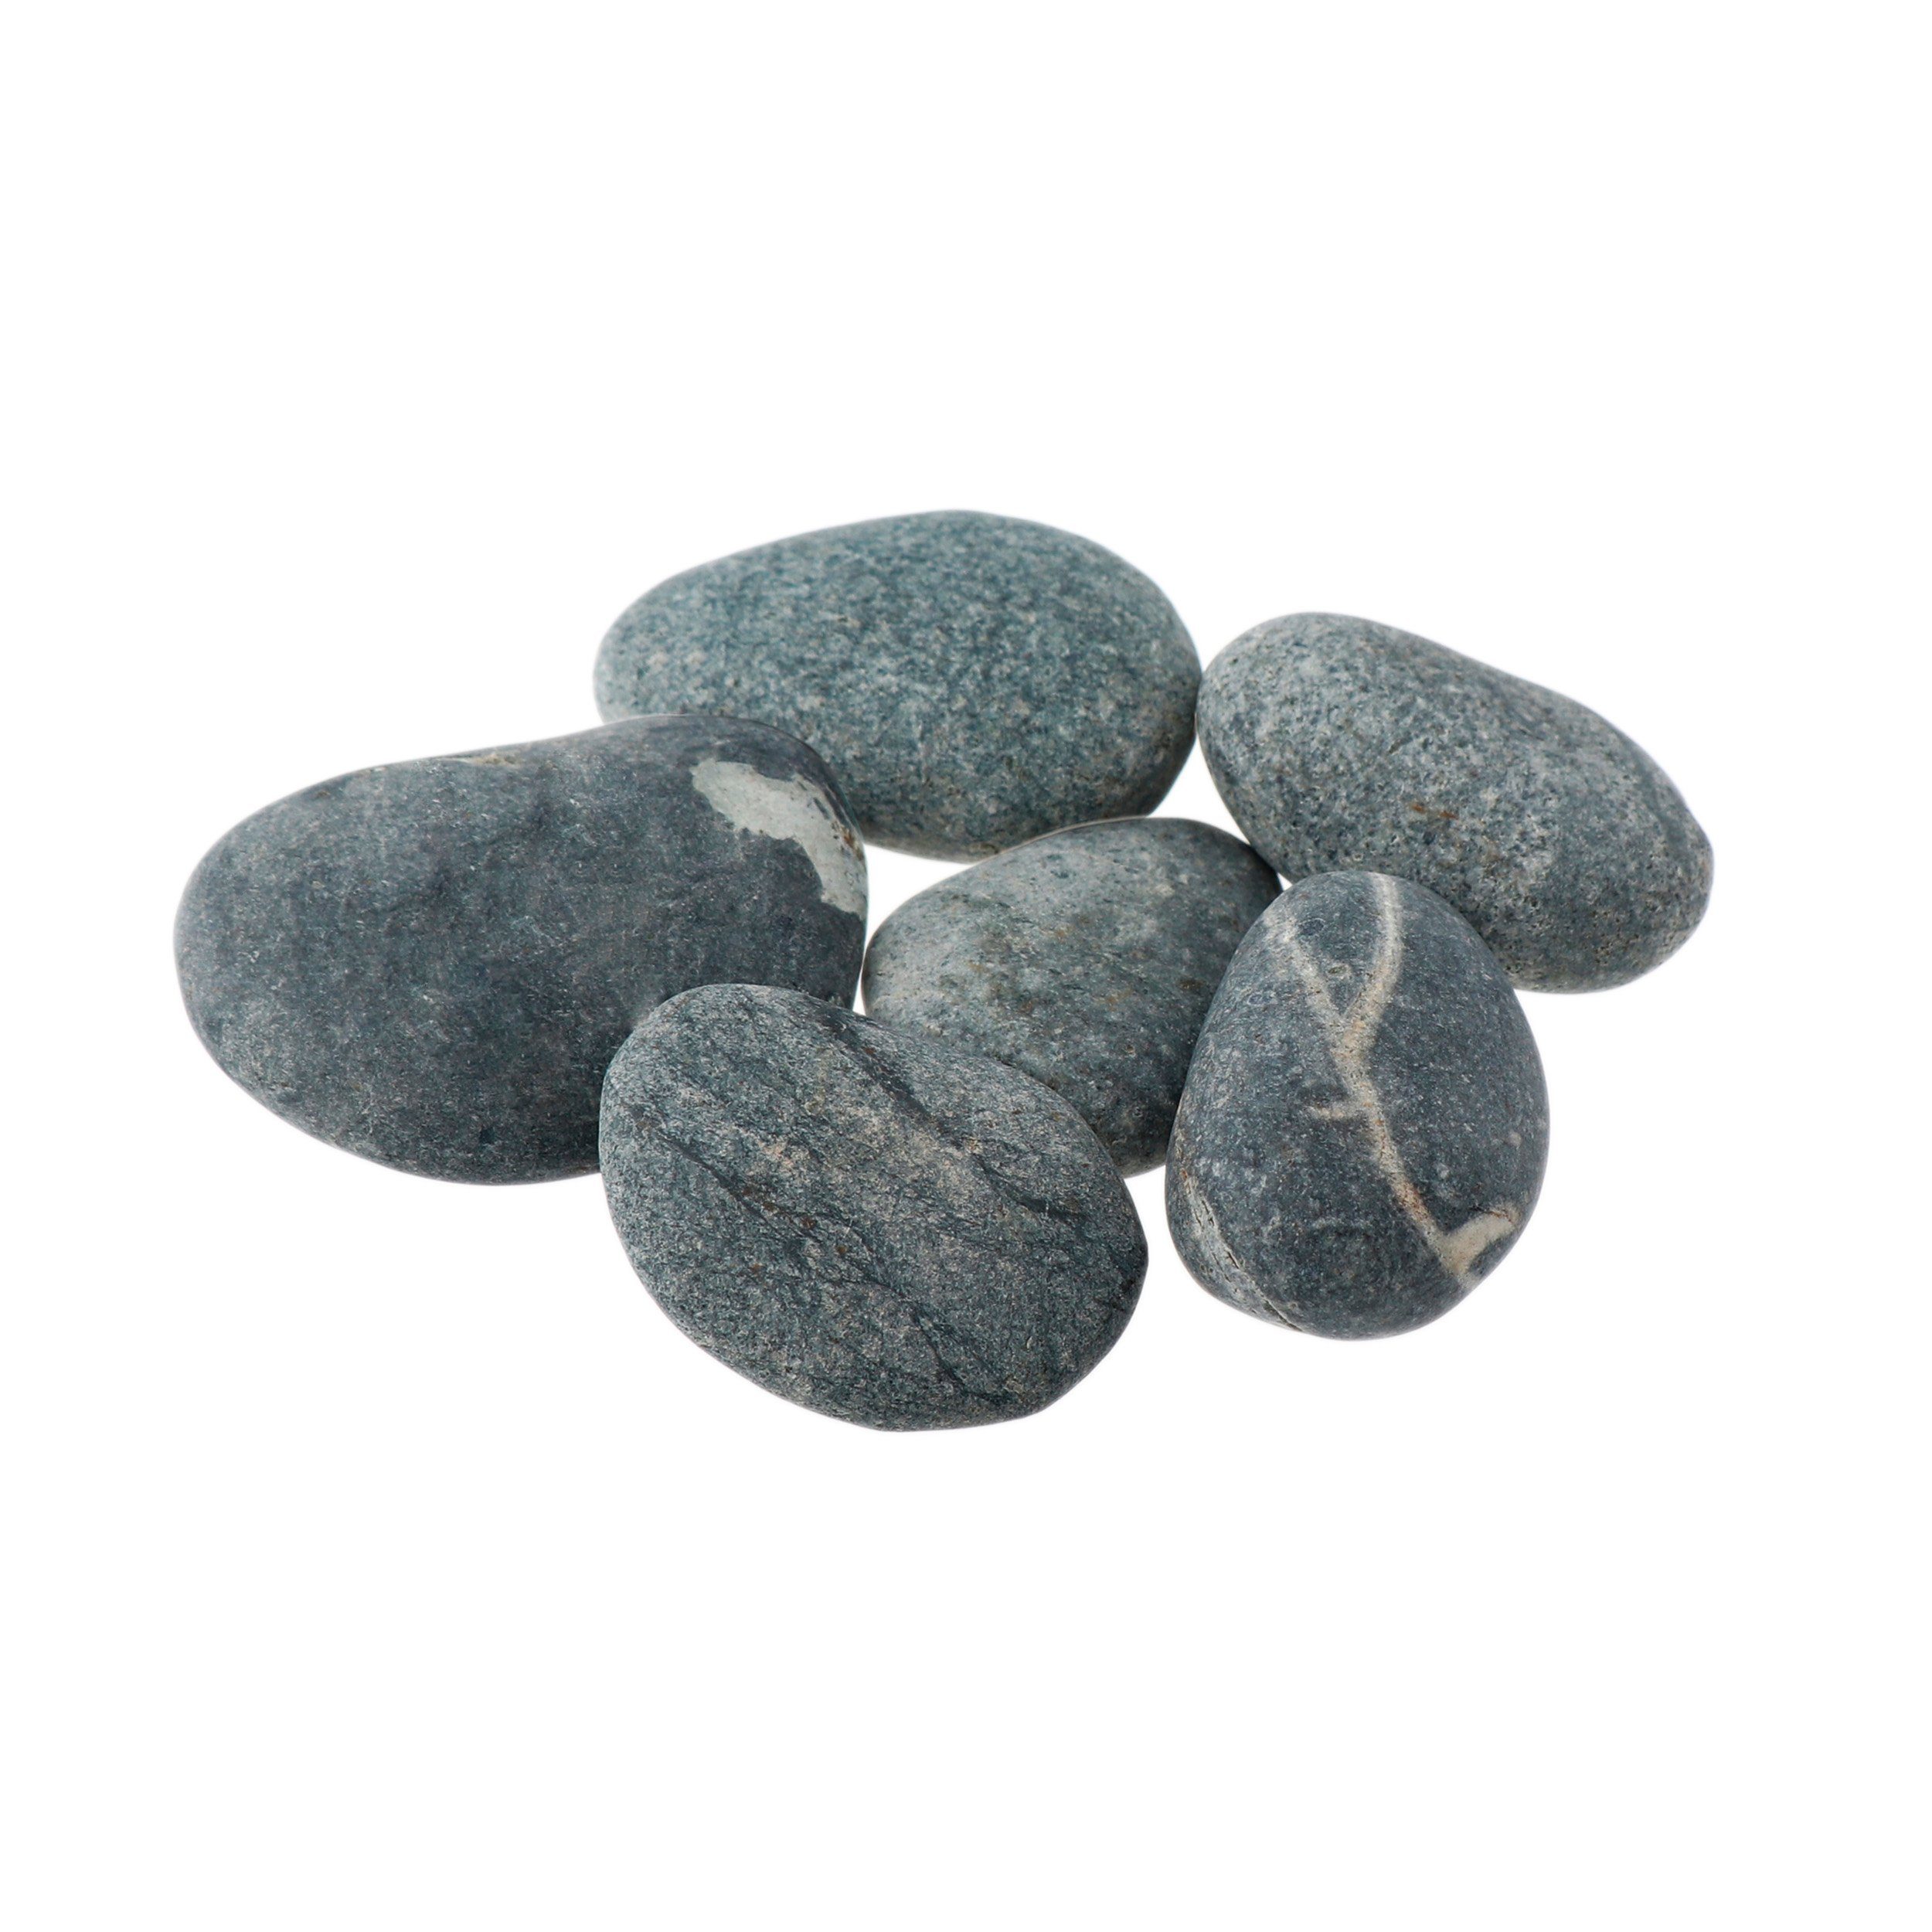 NKlaus Mineralstein 300g Hot Stone 50 - 60mm Massagesteine Wellness Entspannungsstein vulk